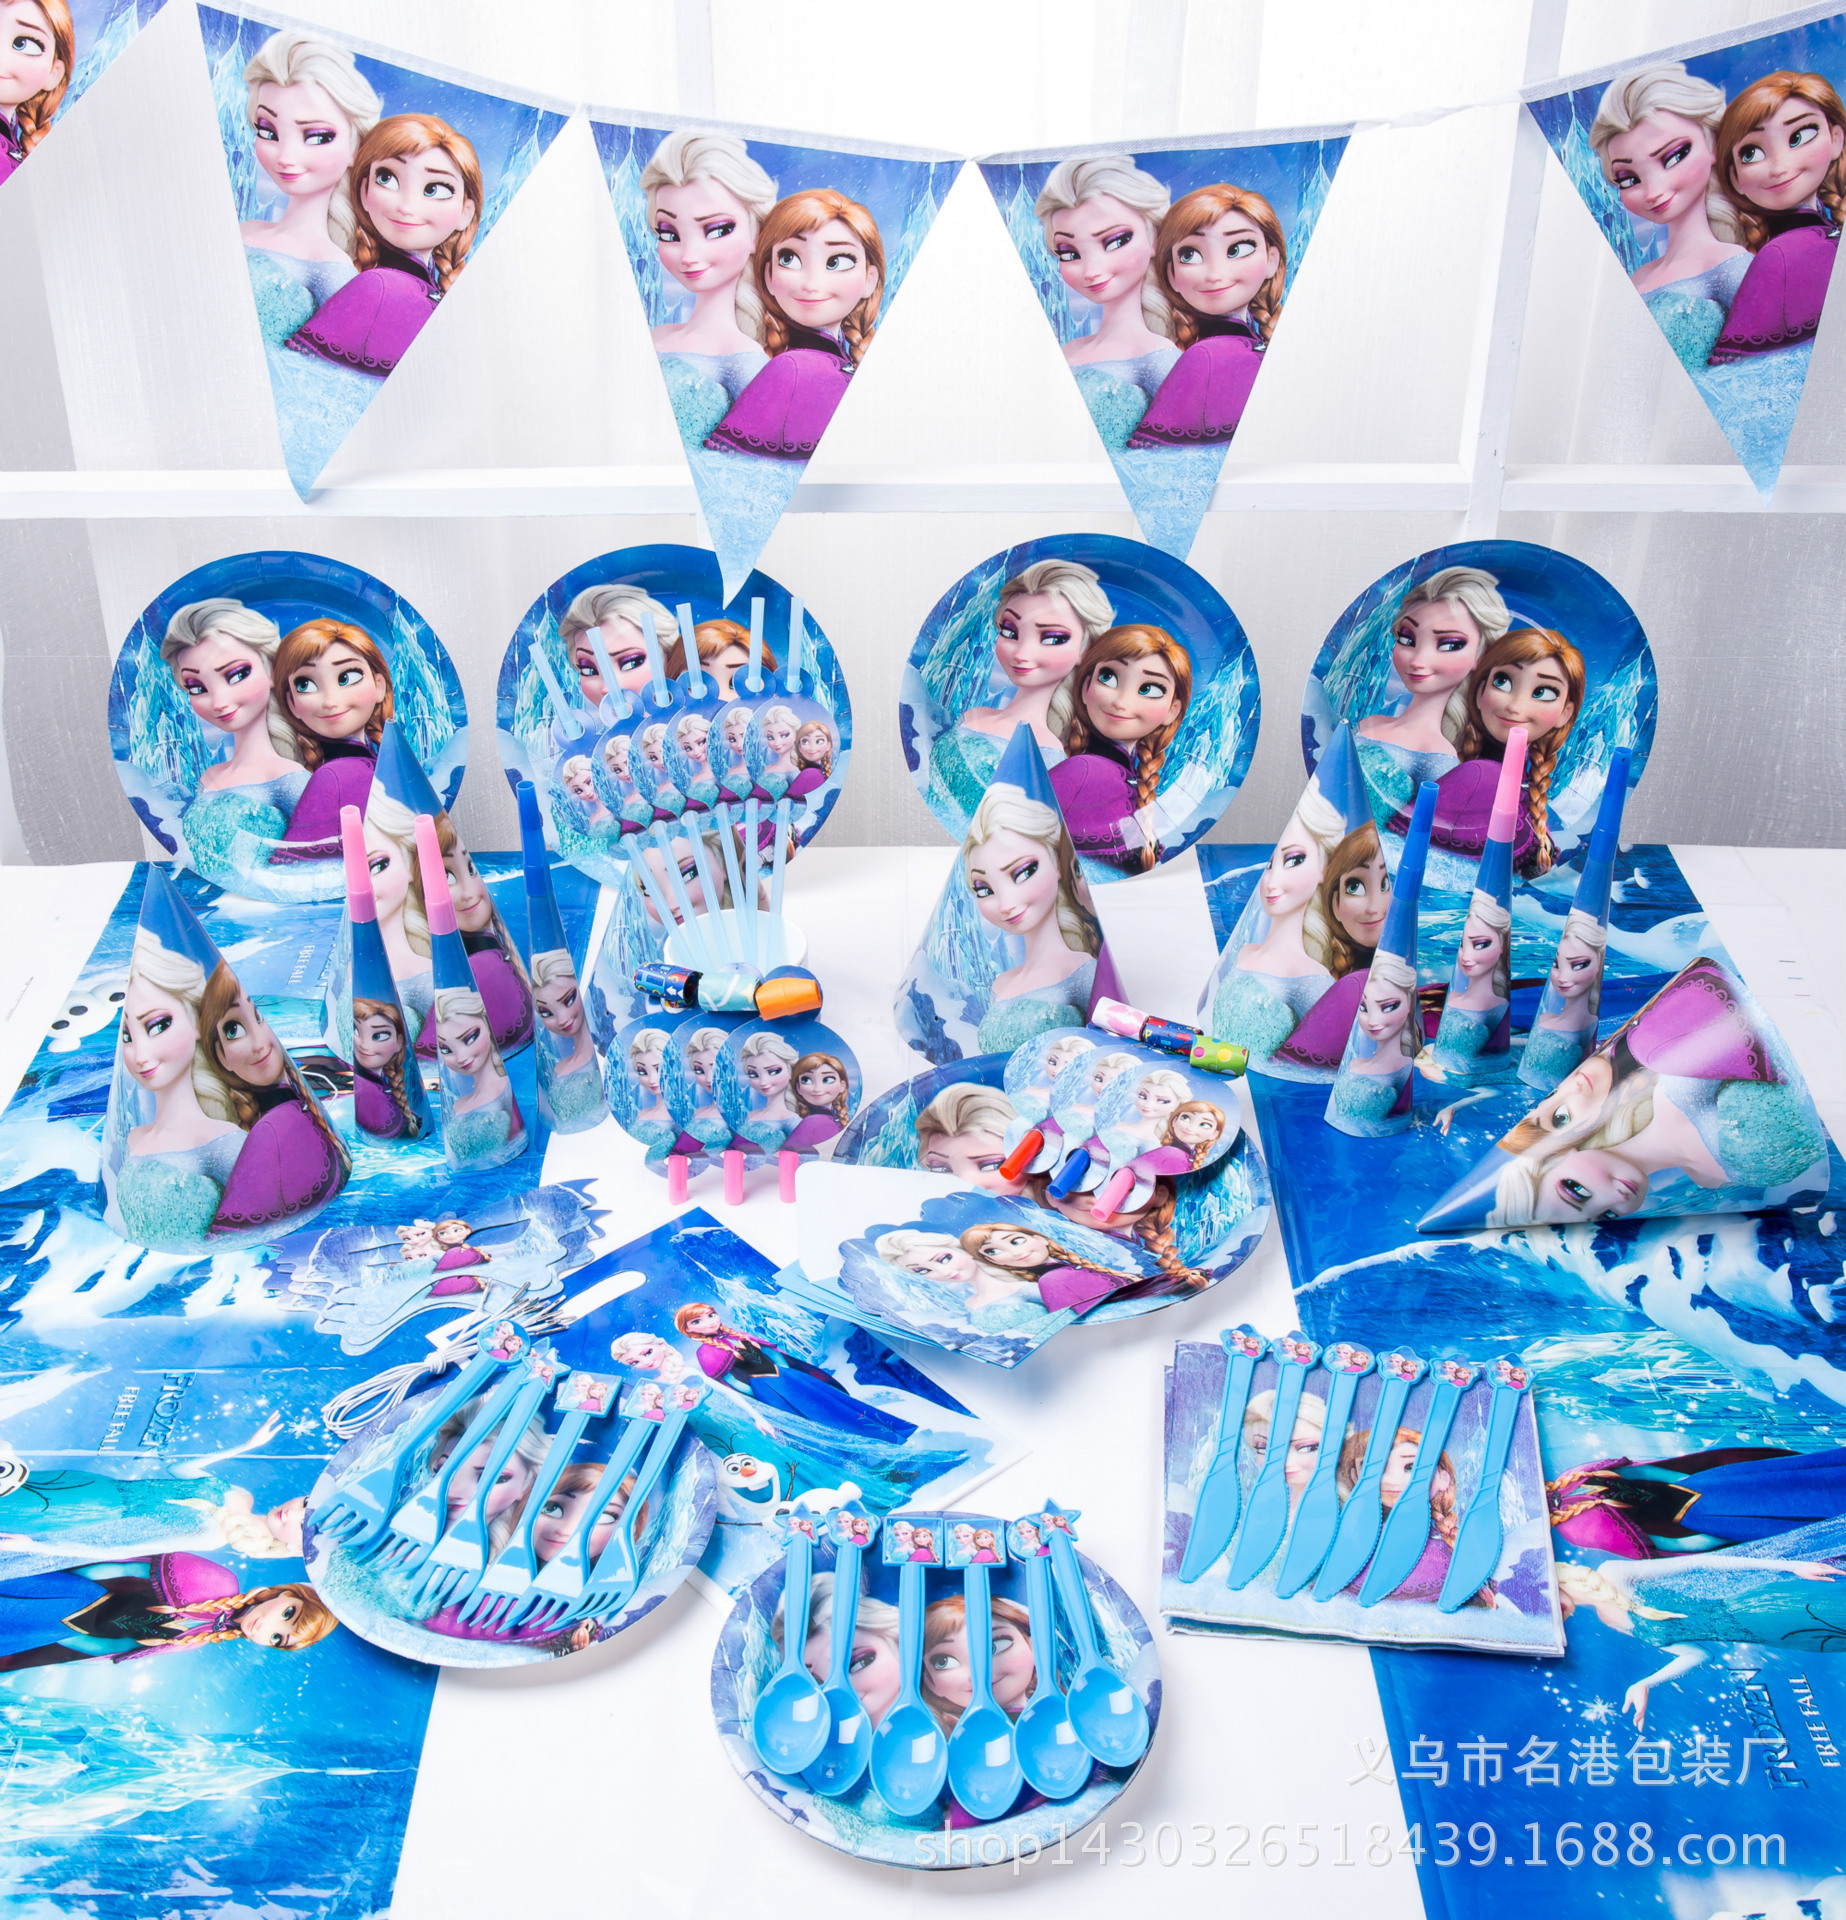 Children's Birthday Party Supplies Ice P...